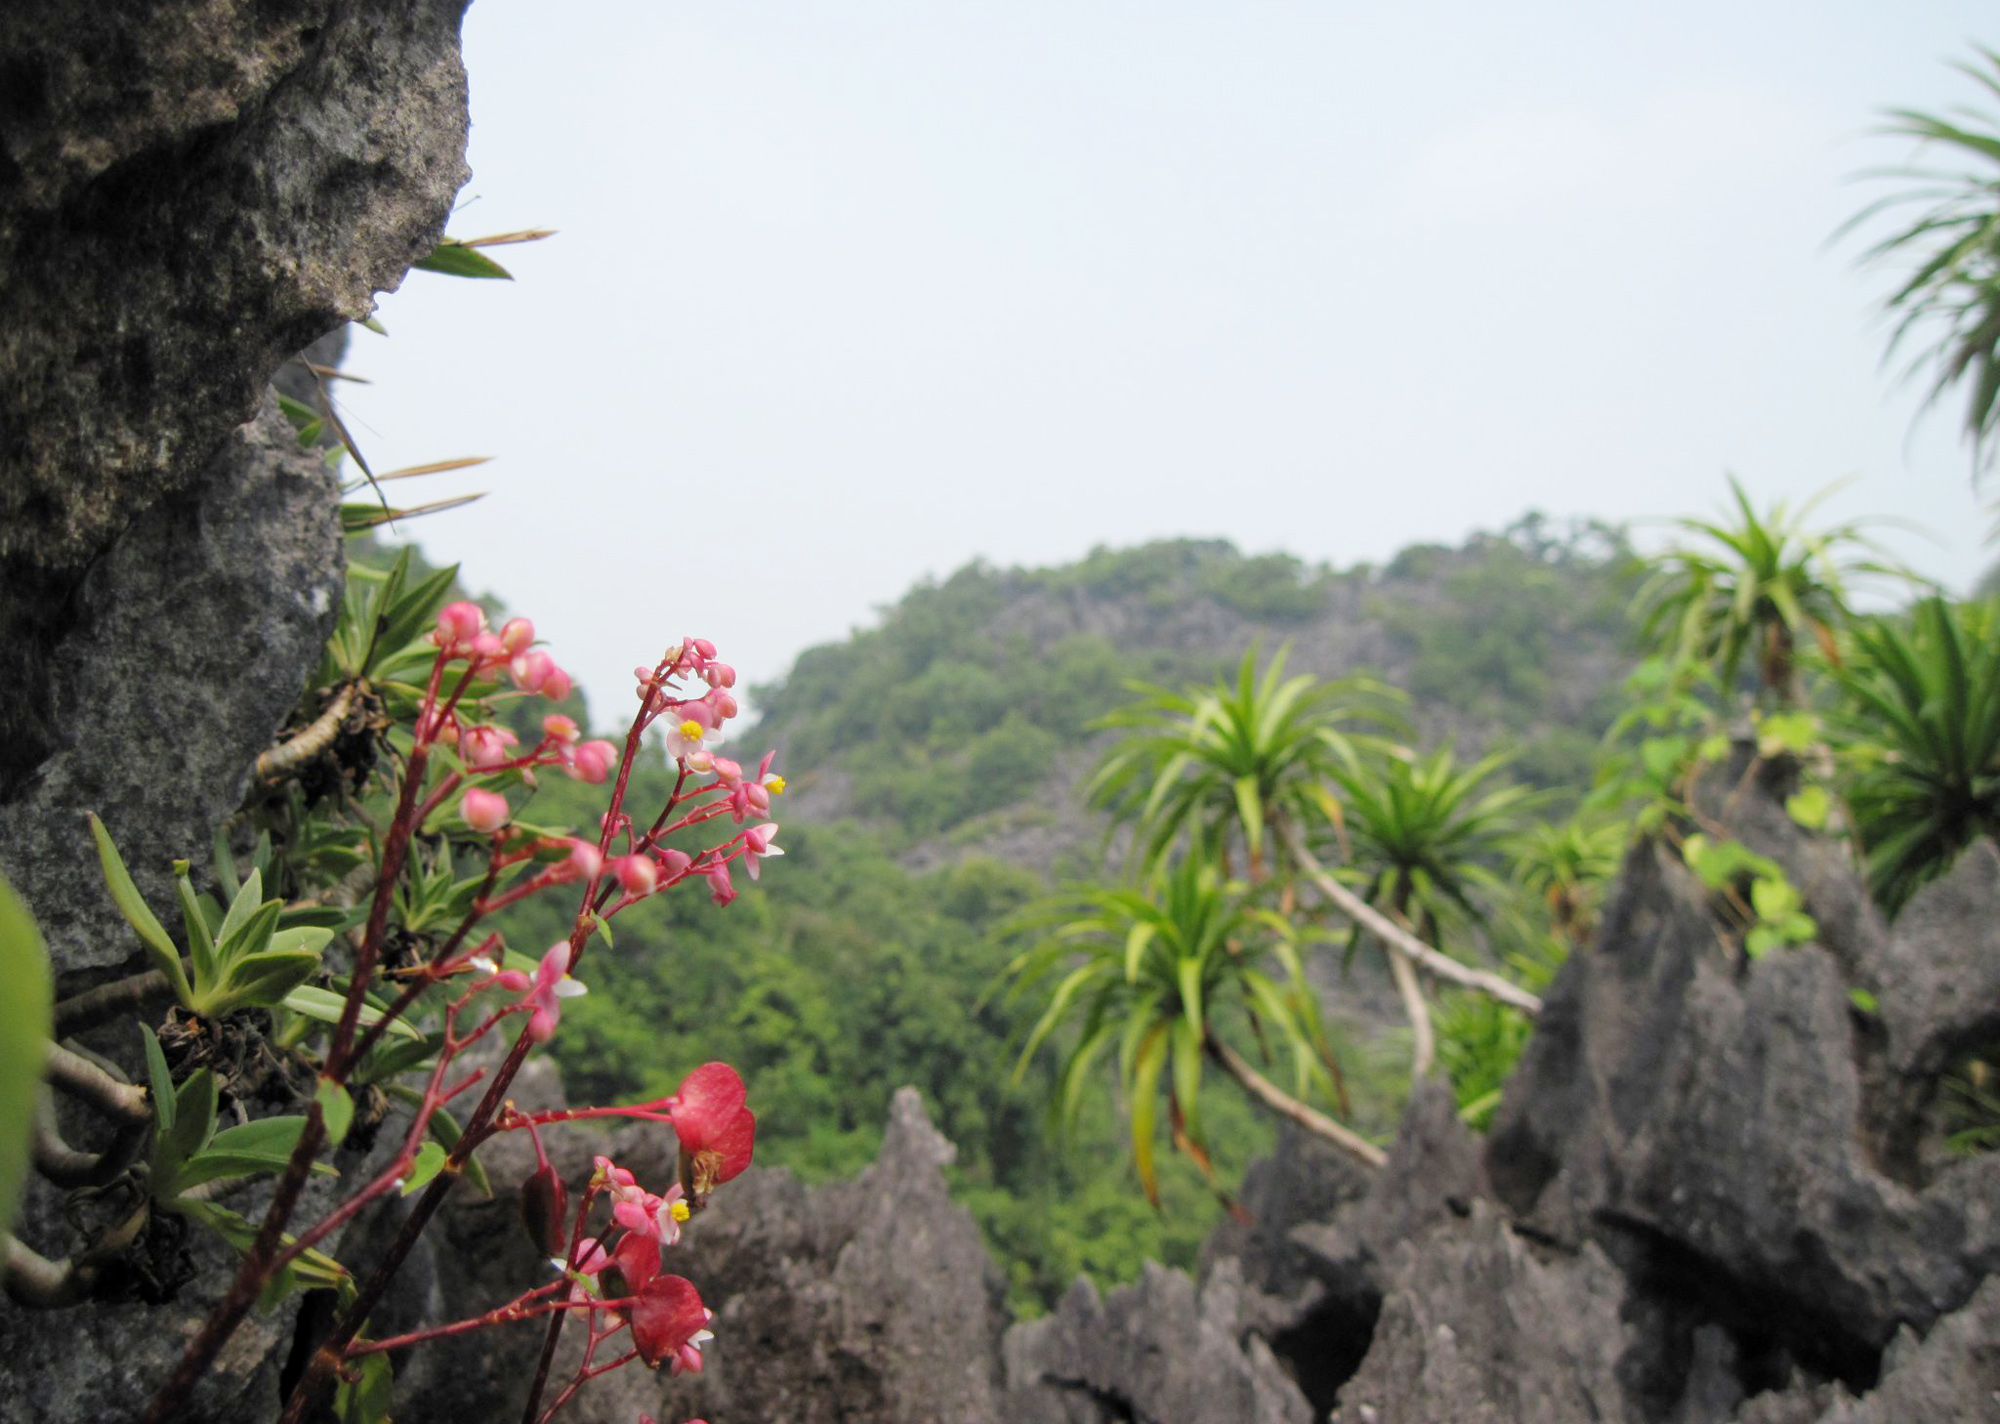 Vườn Quốc gia có nhiều giống cây, hoa quý mọc trên các hòn núi đá, đảo đất và được bảo vệ nghiêm ngặt.